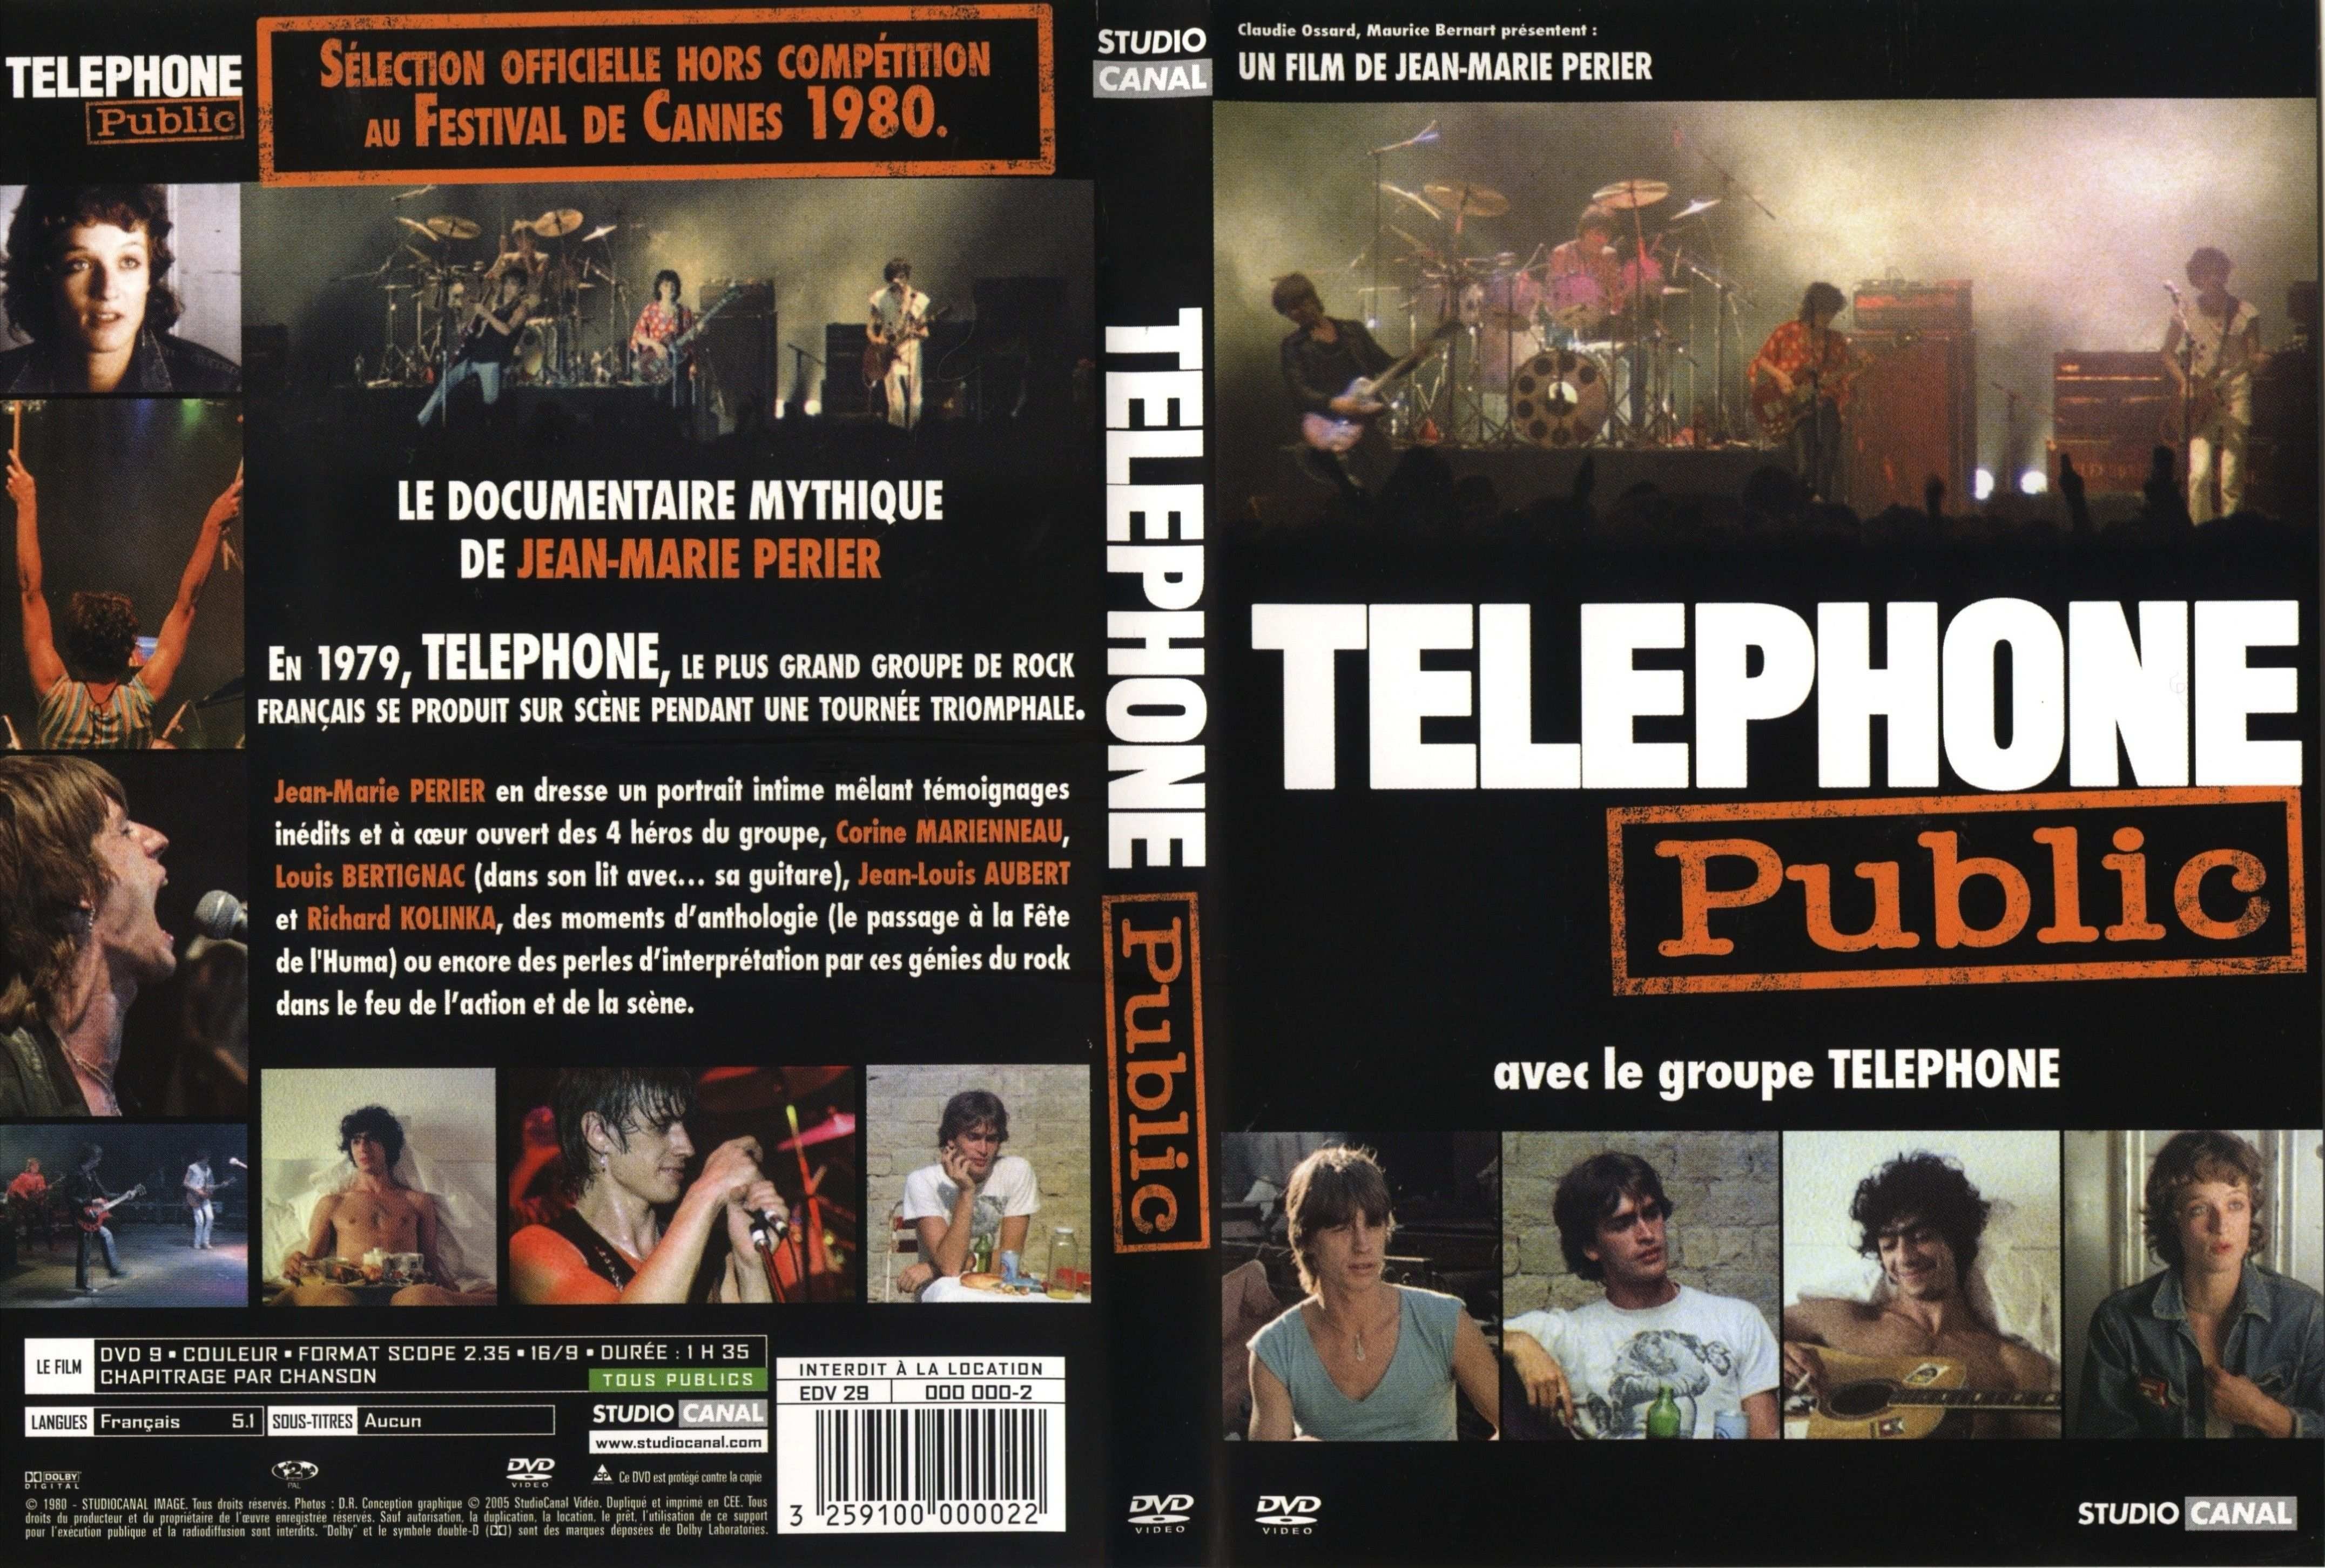 Jaquette DVD Telephone public